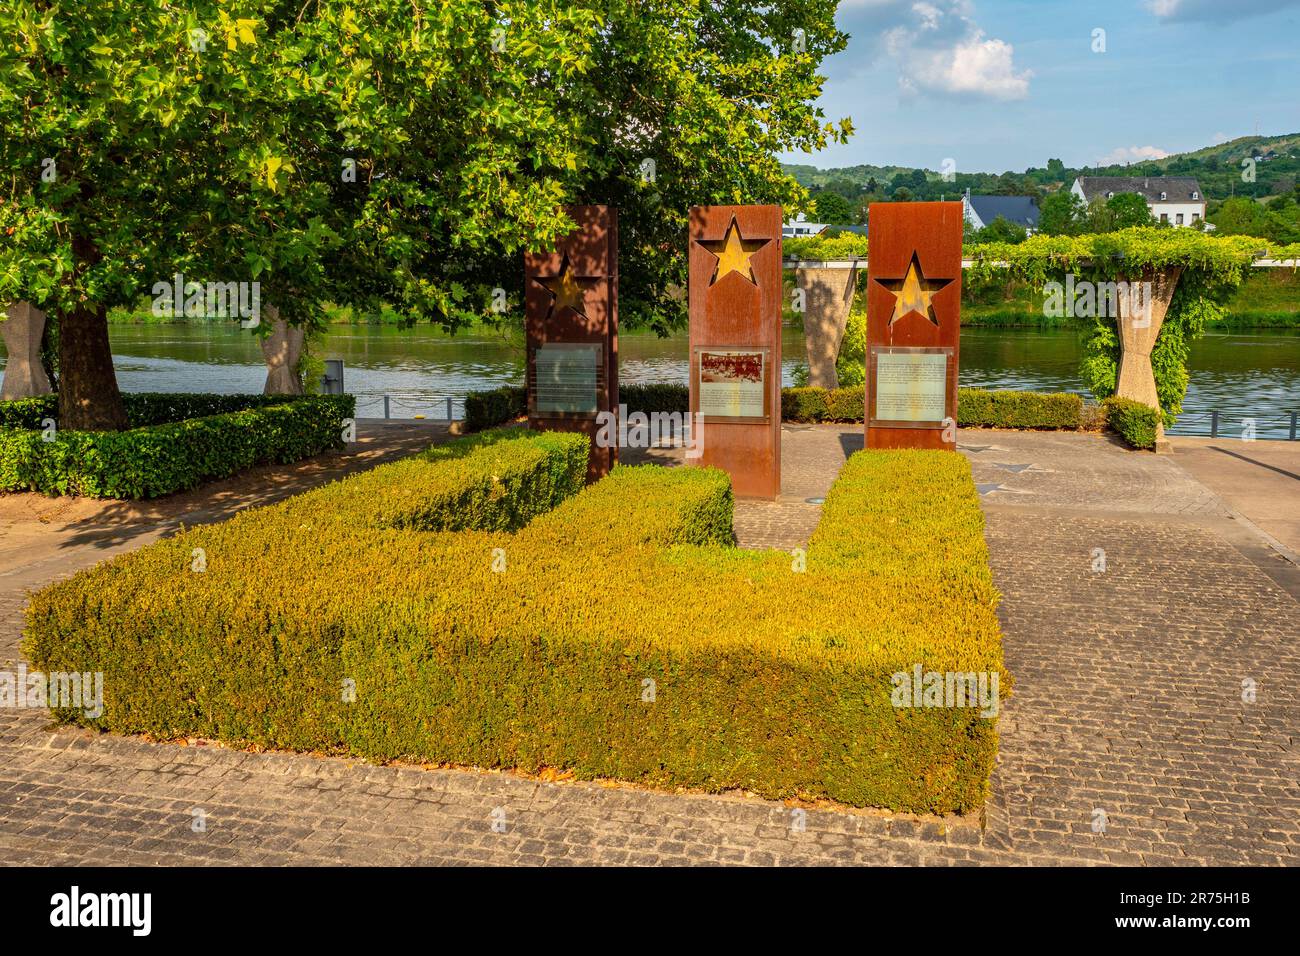 Monument de l'Accord de Schengen, Schengen, Moselle, Benelux, pays du Benelux, Canton de Remich, Luxembourg Banque D'Images